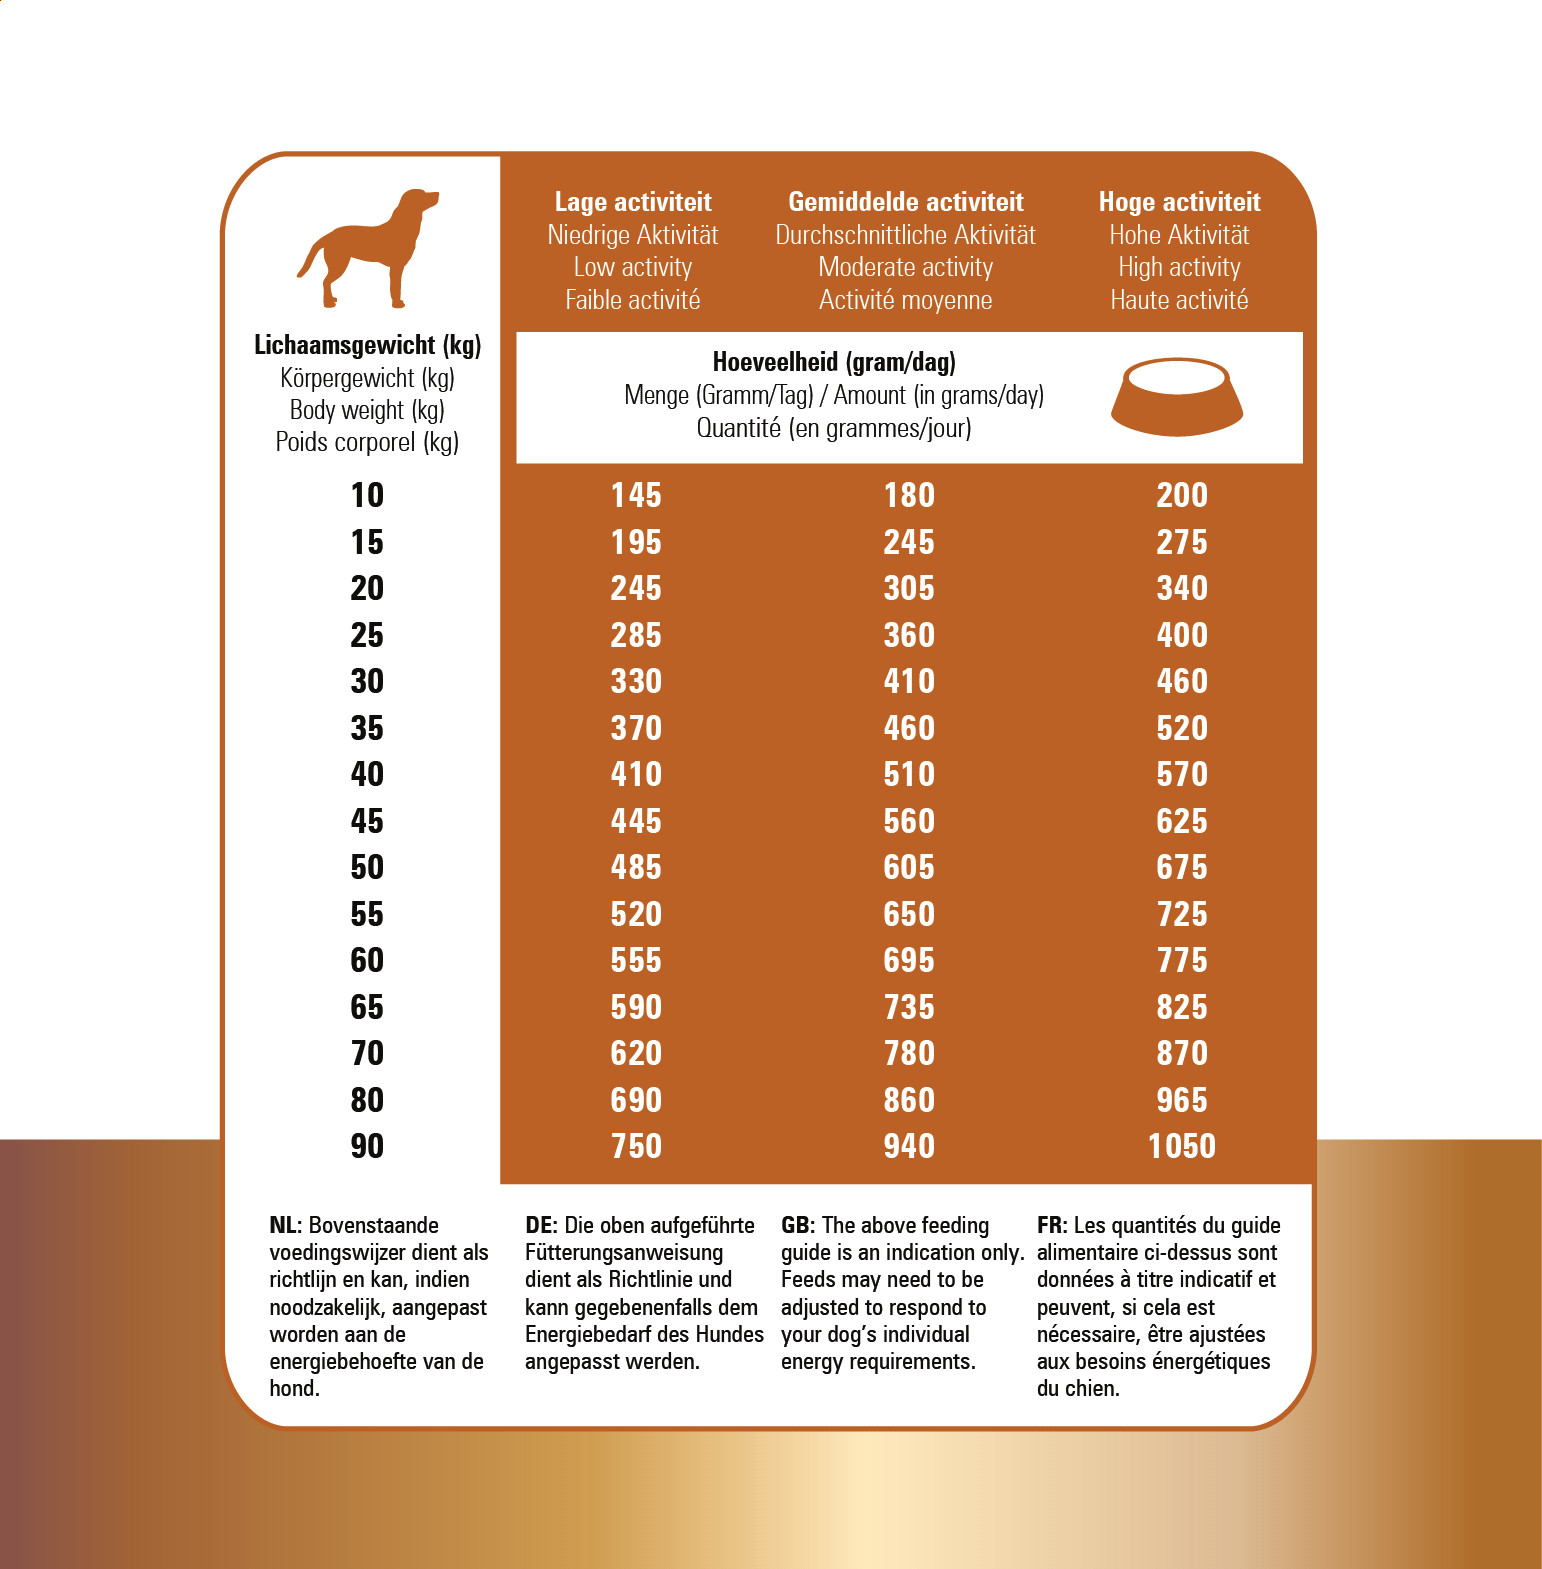 Prins Protection Croque Hypoallergenic met lam hondenvoer